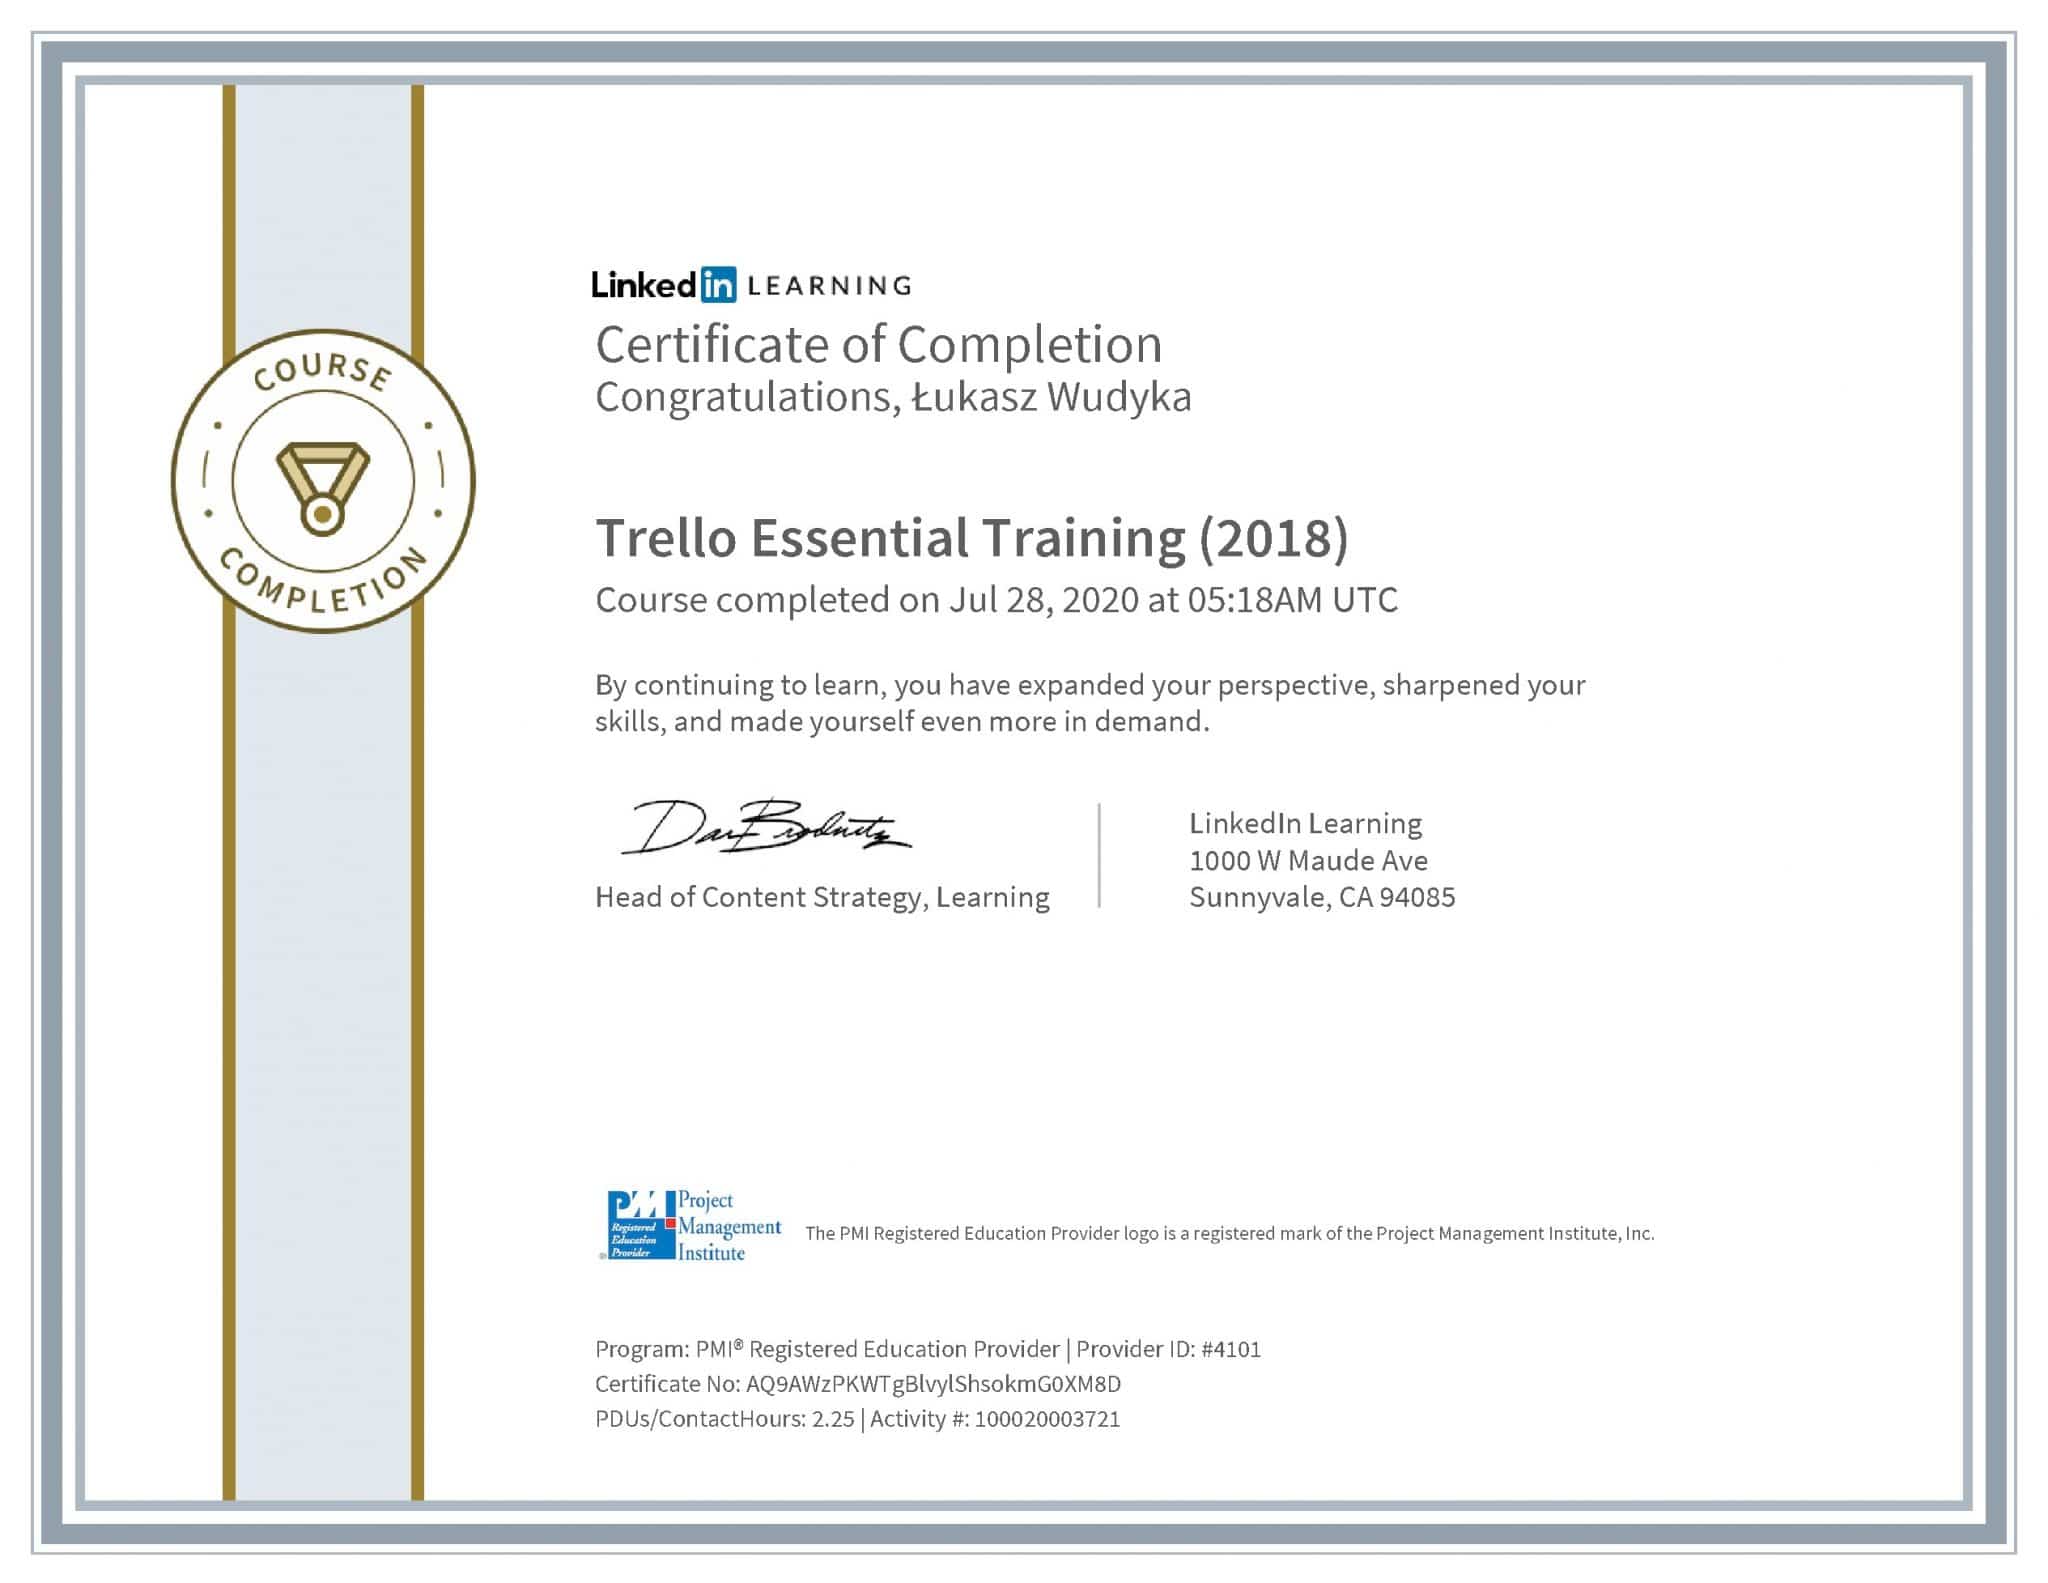 Łukasz Wudyka certyfikat LinkedIn Trello Essential Training (2018) PMI